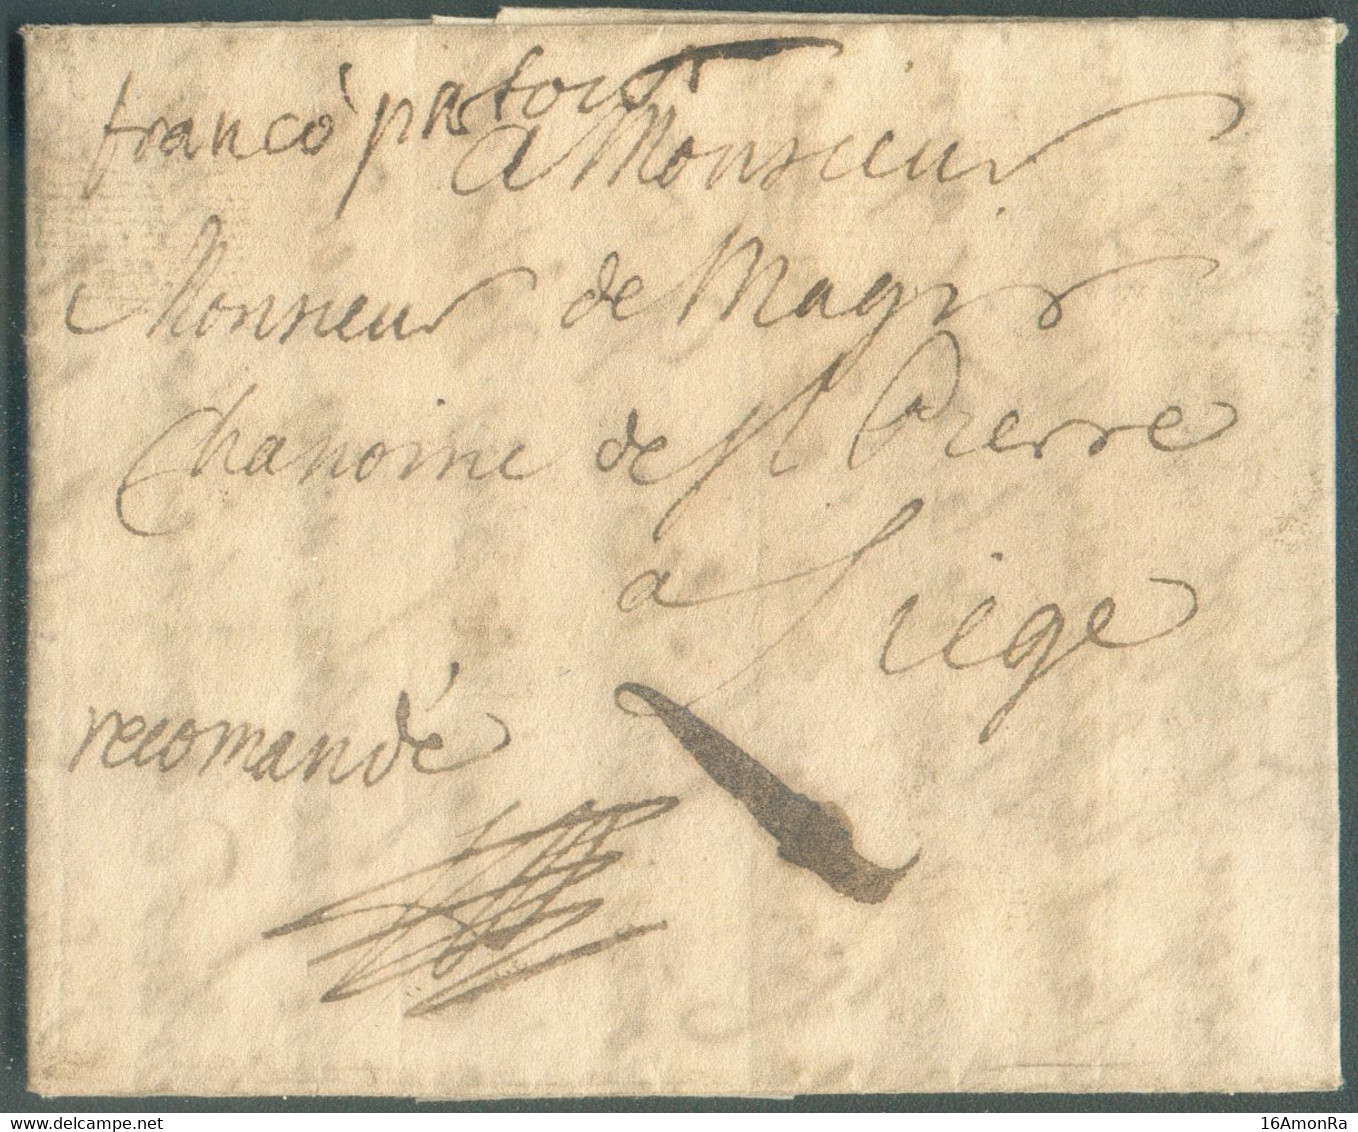 LAC De RATISBONNE (REGENSBURG en Bavière) Le 12 Janvier 1752 + Man. 'Recommandé' (RR à Cette époque) Et franco Fcfort ve - 1714-1794 (Pays-Bas Autrichiens)